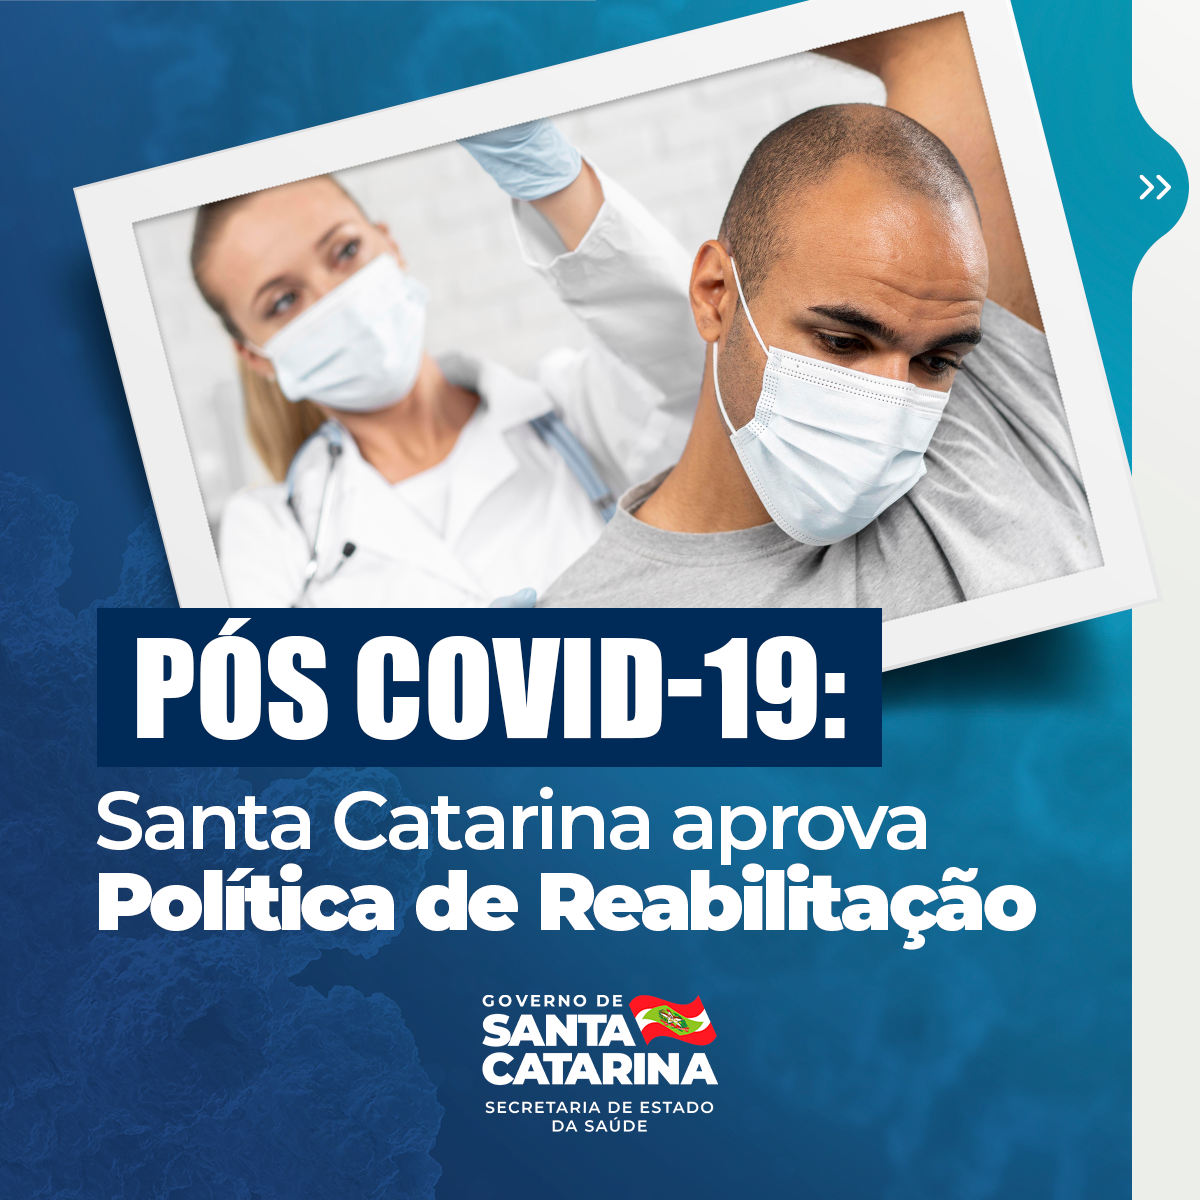 Santa-Catarina-aprova-Política-de-Reabilitação-para-pacientes-pós-Covid-19_01.png